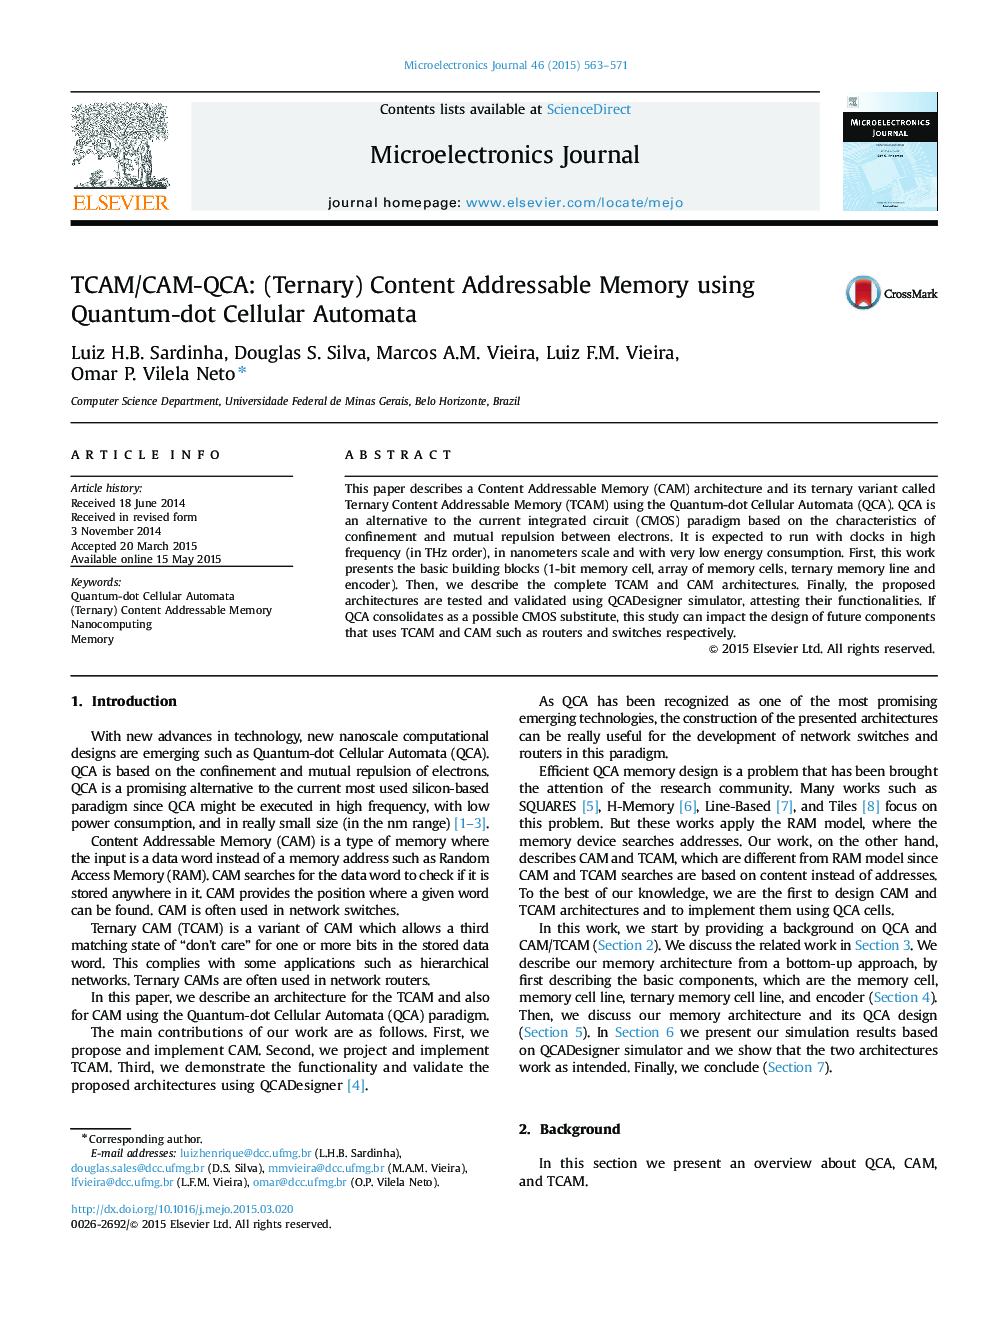 TCAM/CAM-QCA: (Ternary) Content Addressable Memory using Quantum-dot Cellular Automata